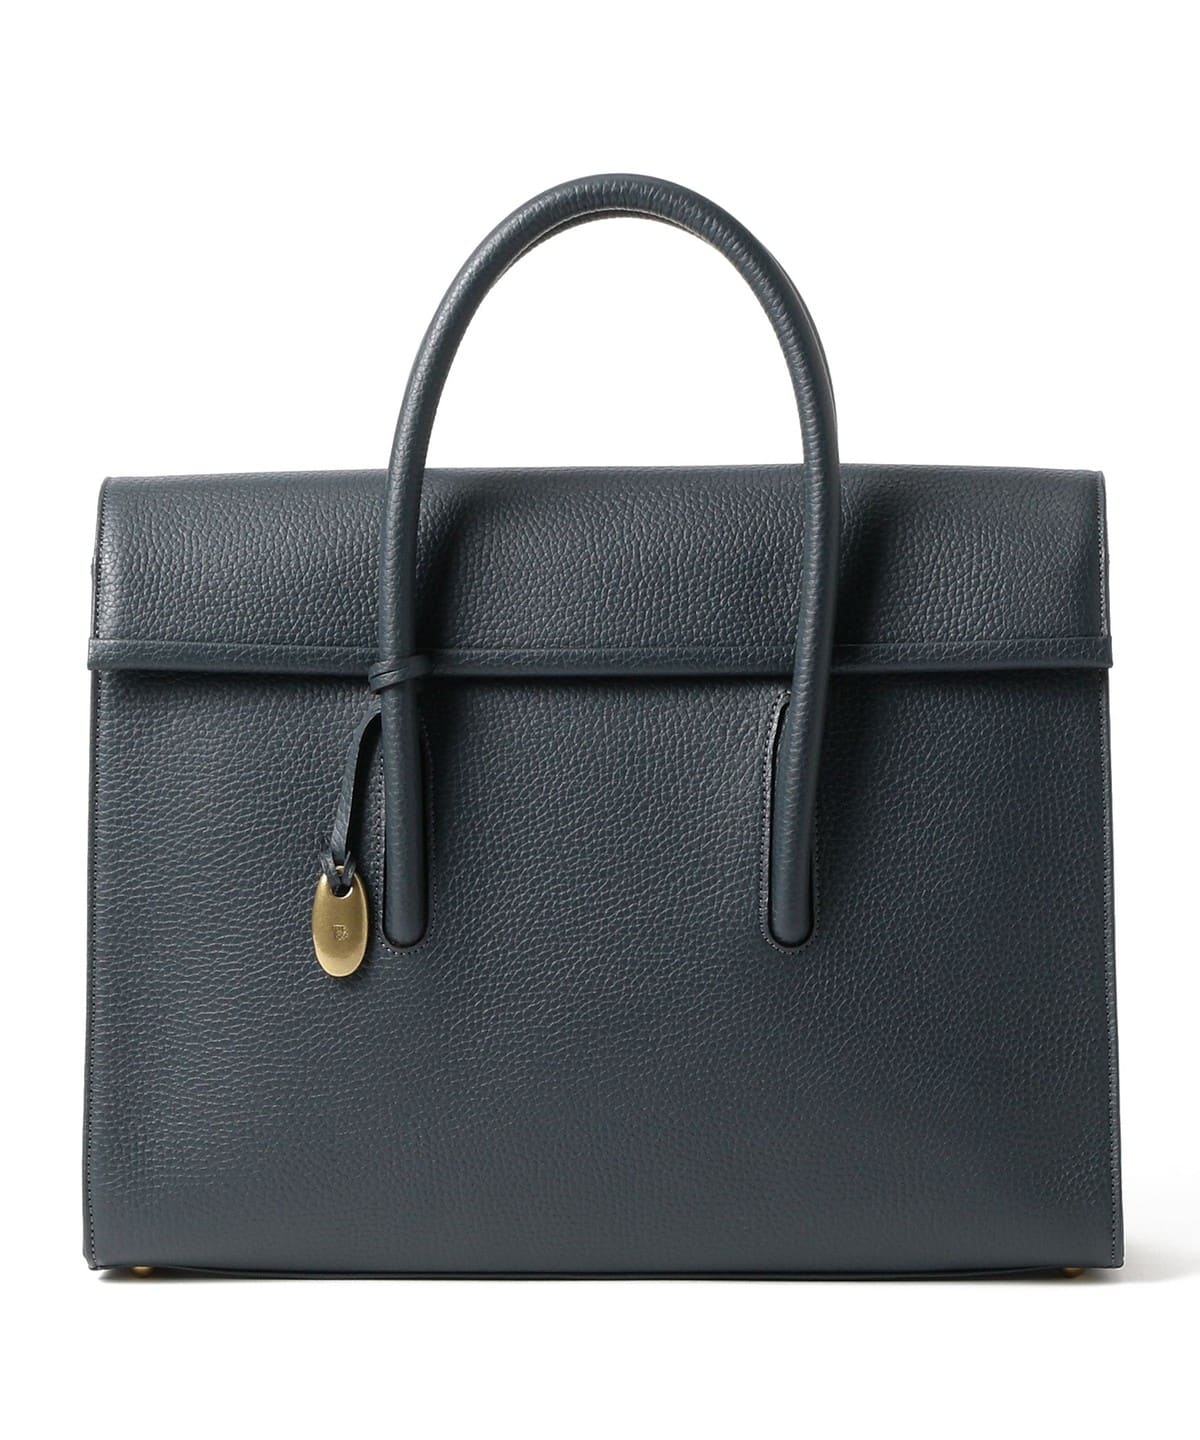 BEAMS F TOFF & LOADSTONE / DEBONAIR leather briefcase (bag ...